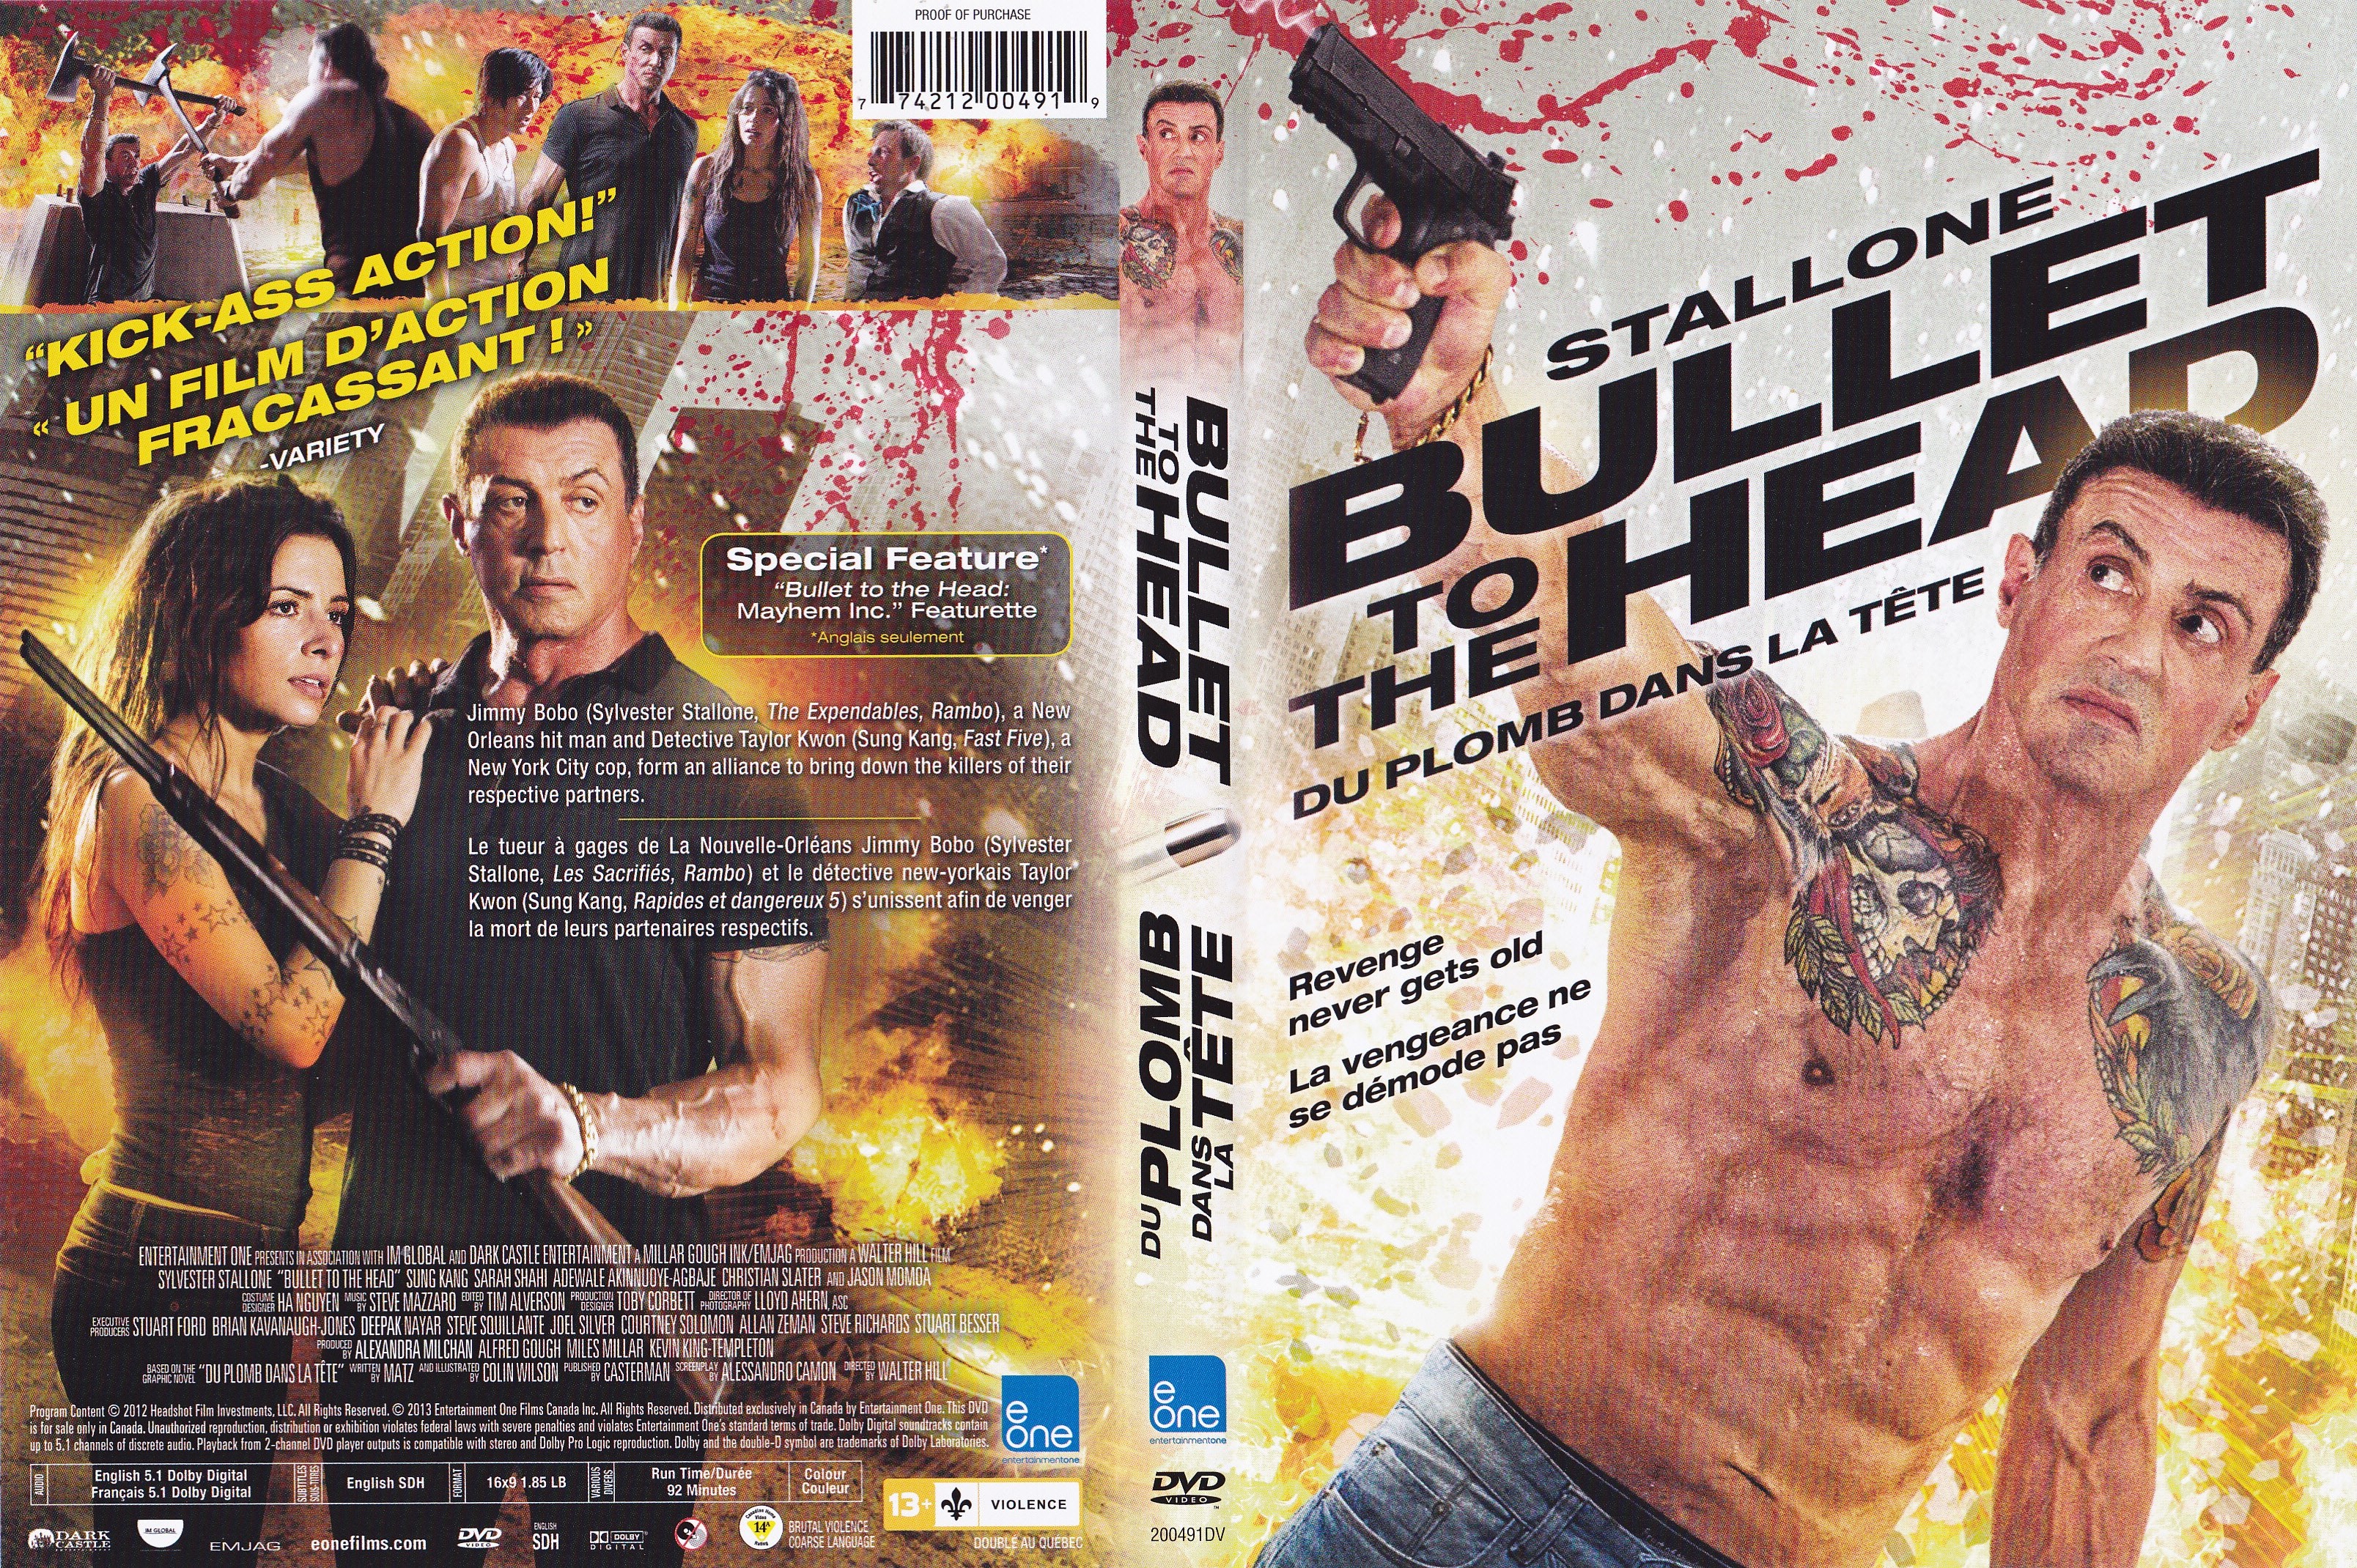 Jaquette DVD Bullet to the head - Du Plomb dans la Tte (Canadienne)